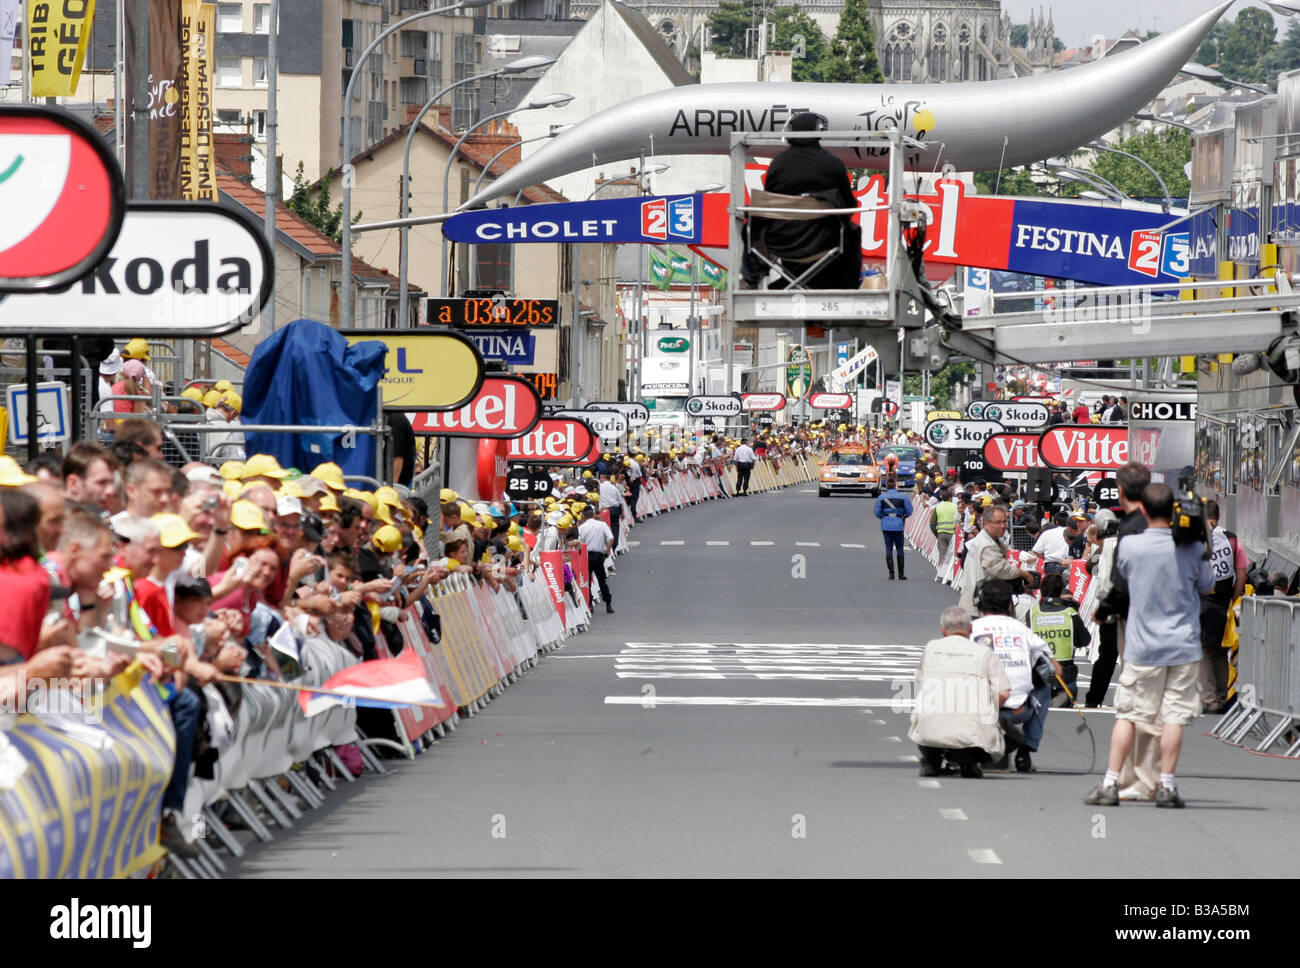 La ligne d'arrivée au moment de la première jambe Cholet Tour de France en 2008 Banque D'Images